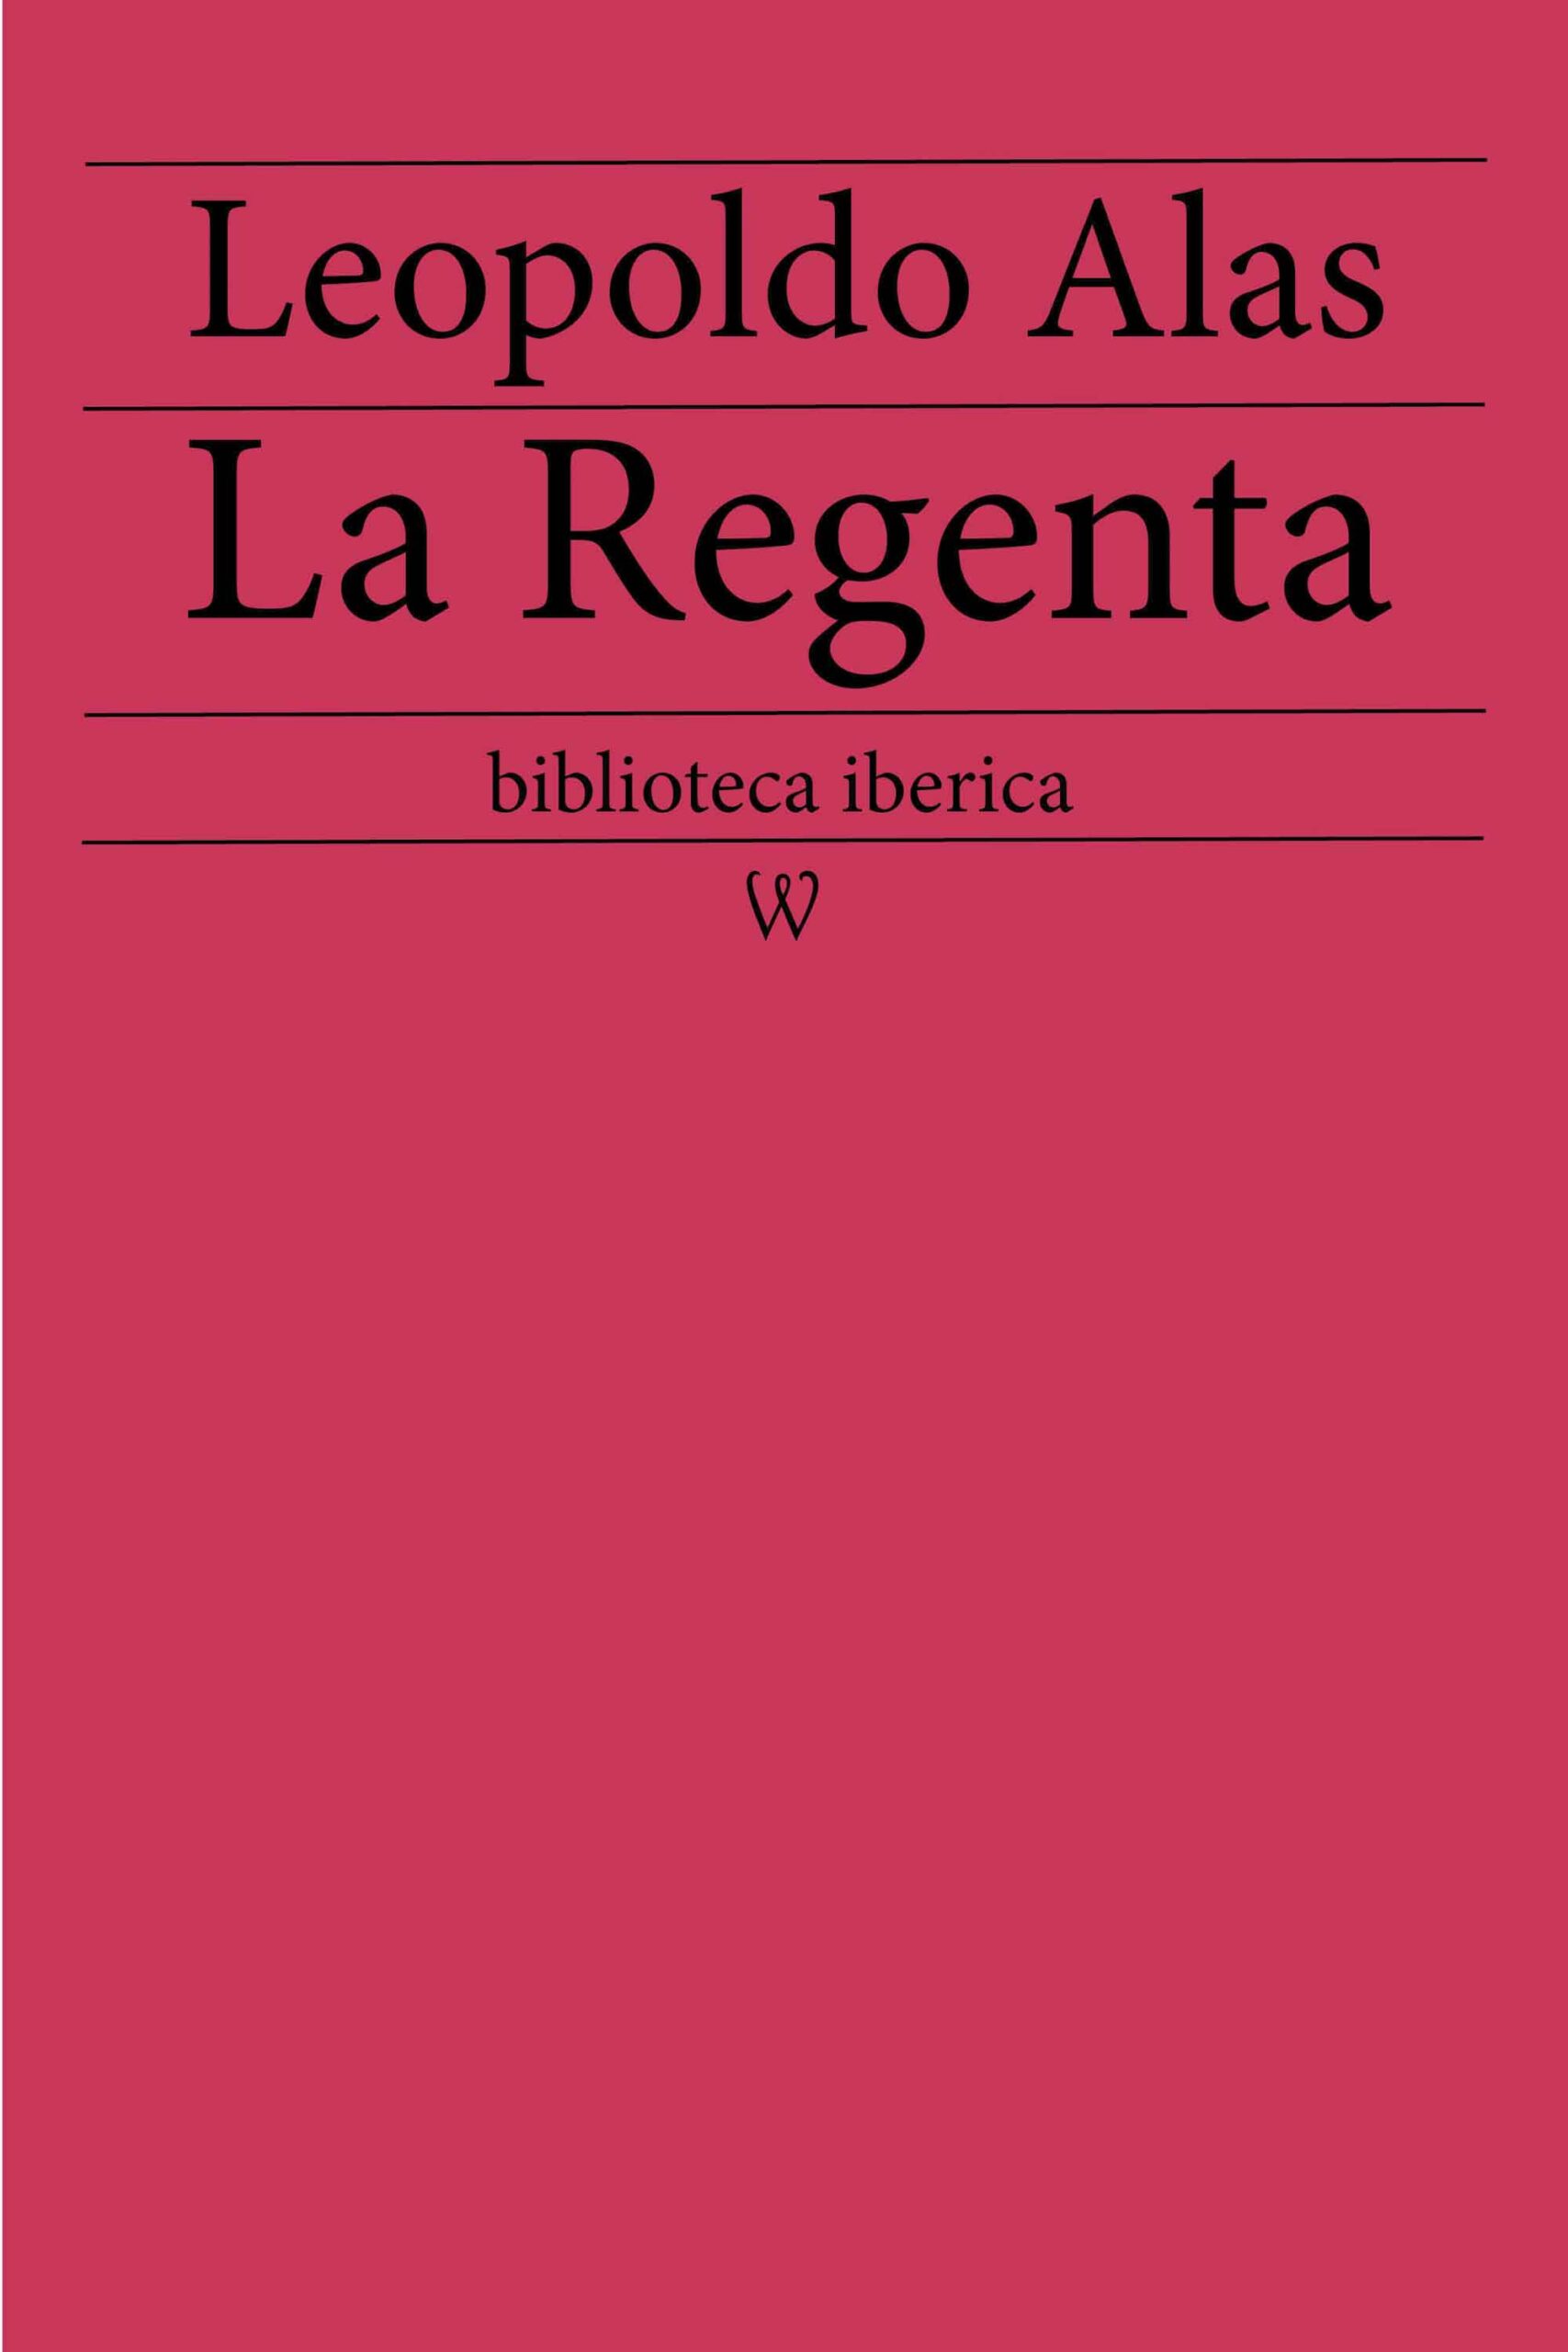 La Regenta